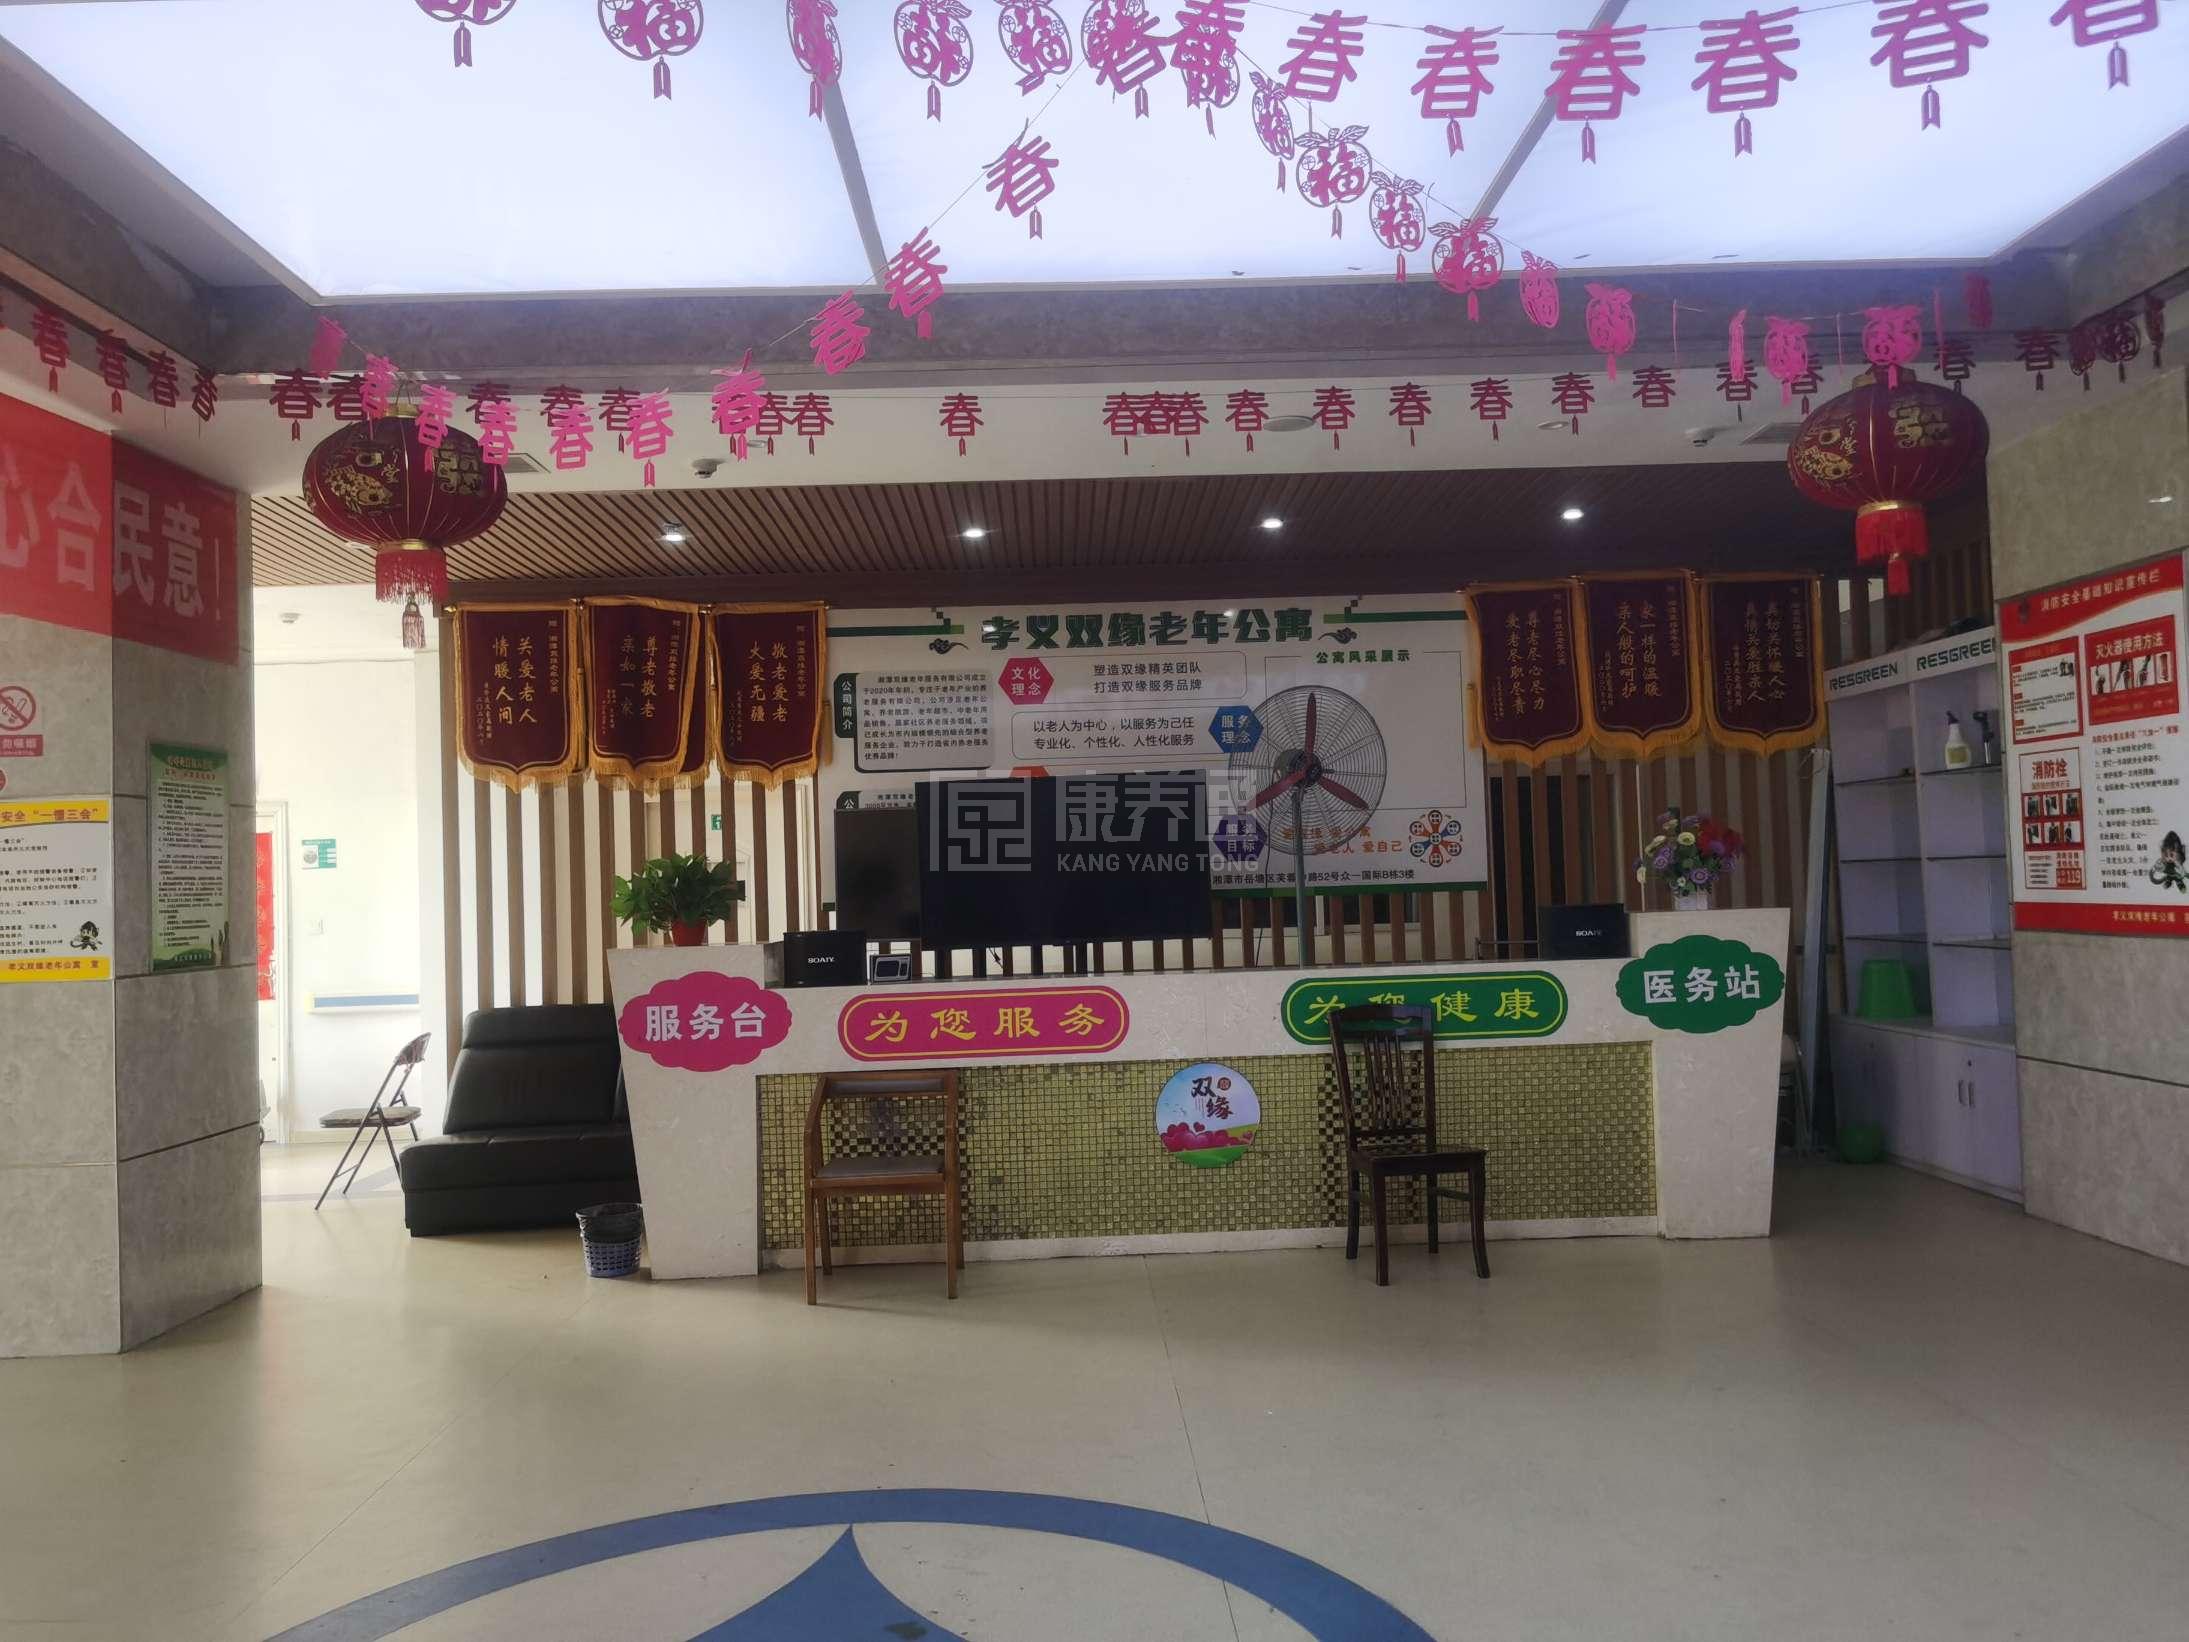 湘潭双缘老年服务有限公司环境图-餐台